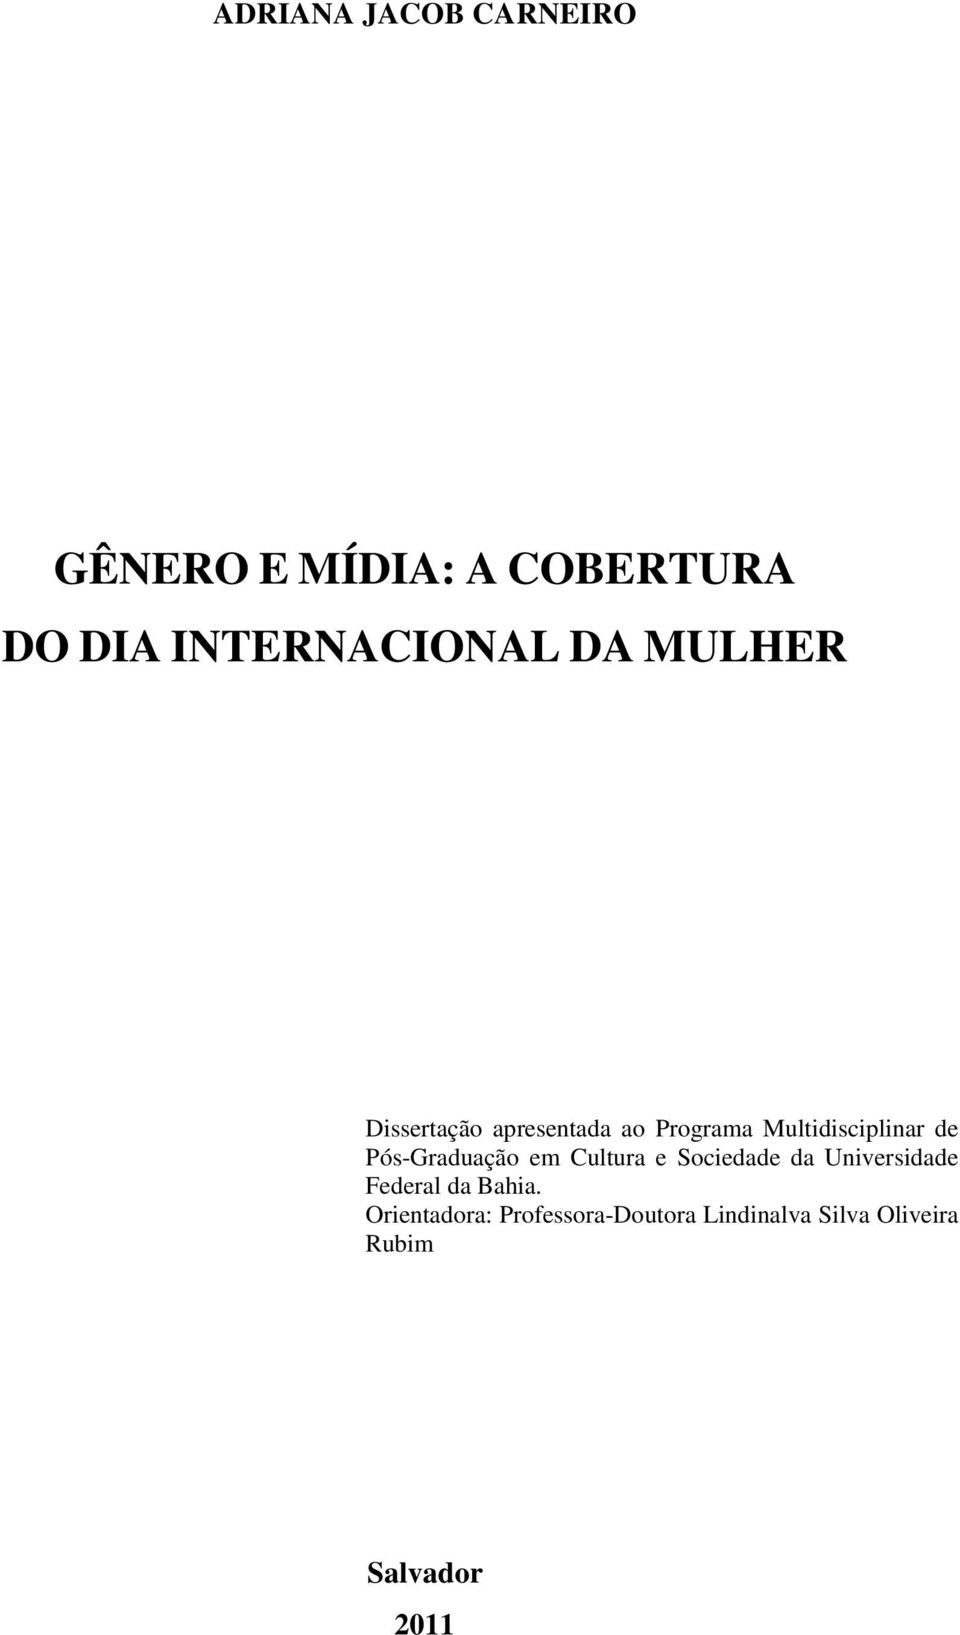 Pós-Graduação em Cultura e Sociedade da Universidade Federal da Bahia.